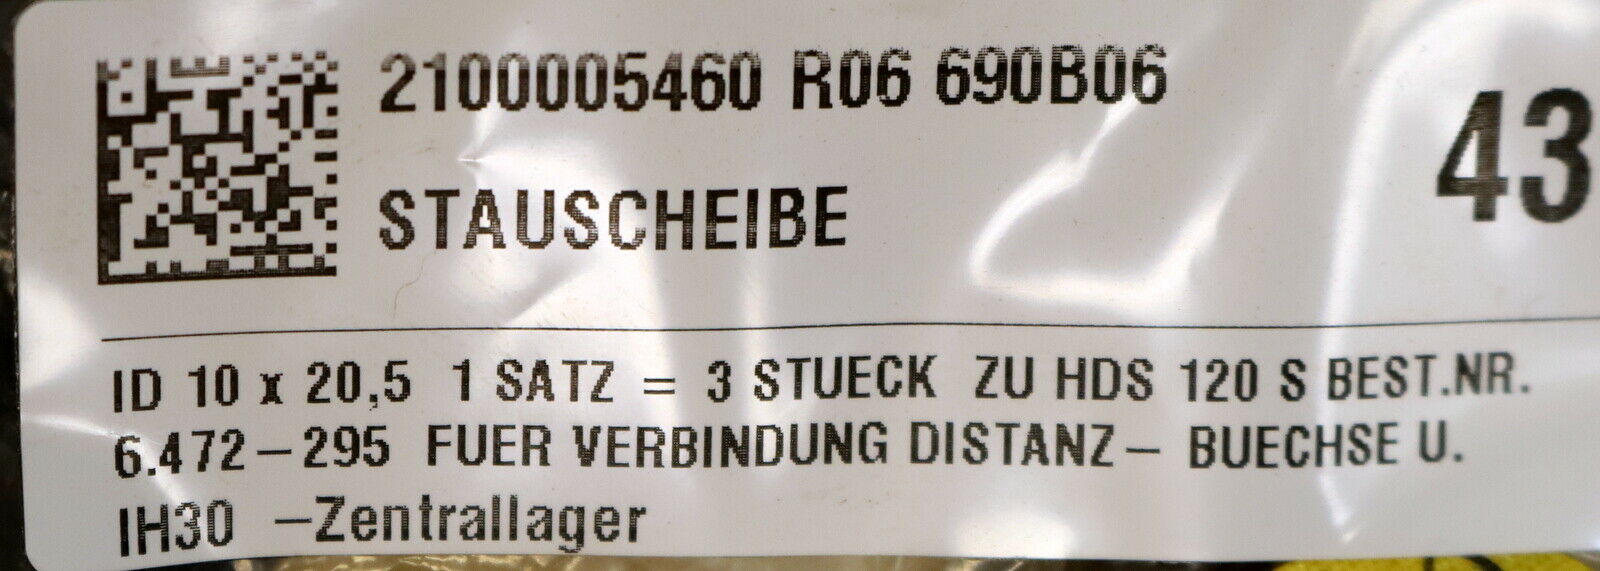 KÄRCHER 3 Stück Stauscheibe 6.472-295.0 für HDS 120 S - unbenutzt